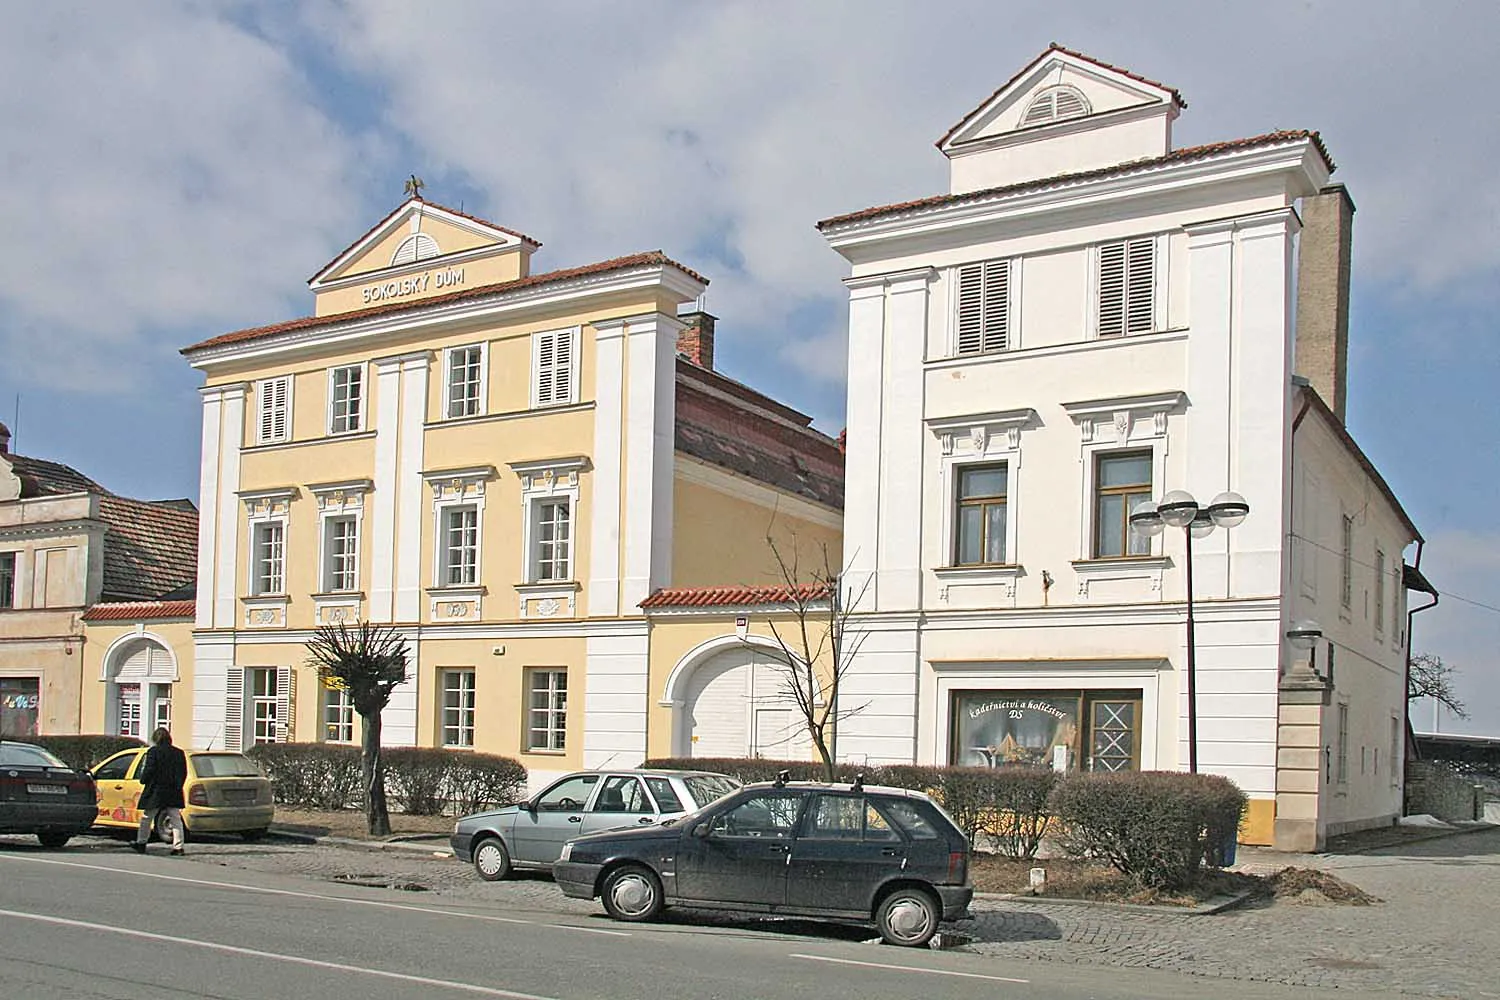 Photo showing: Městský dům (Opočno), Kupkovo nám. 134, Opočno
autor: Prazak

date: 23. 3. 2006